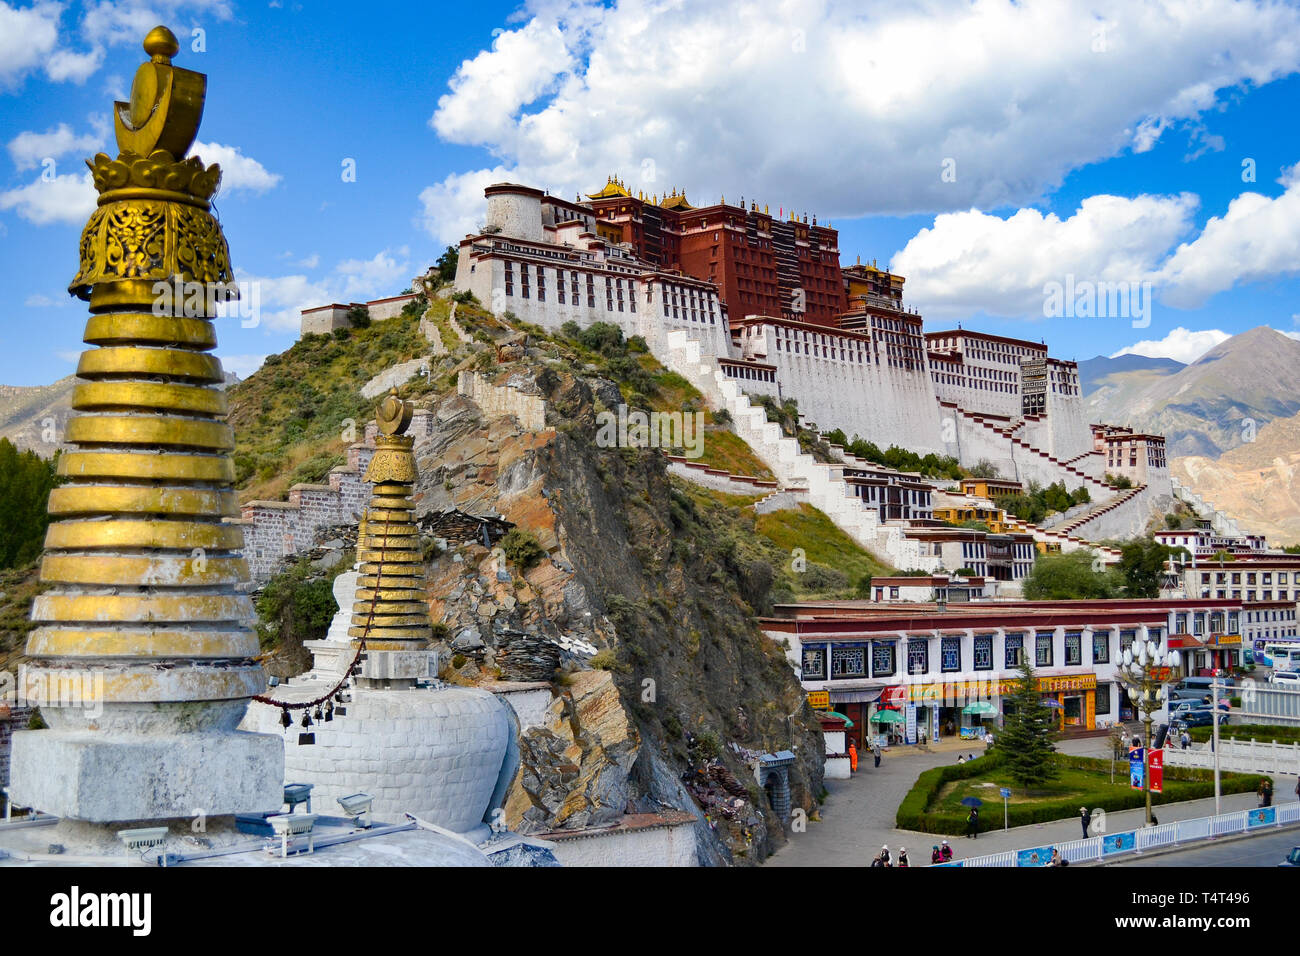 Potala-palast, der ursprünglichen Residenz des Dalai Lama und der wichtigsten Architektur des tibetischen Buddhismus in Lhasa, Tibet, China Stockfoto